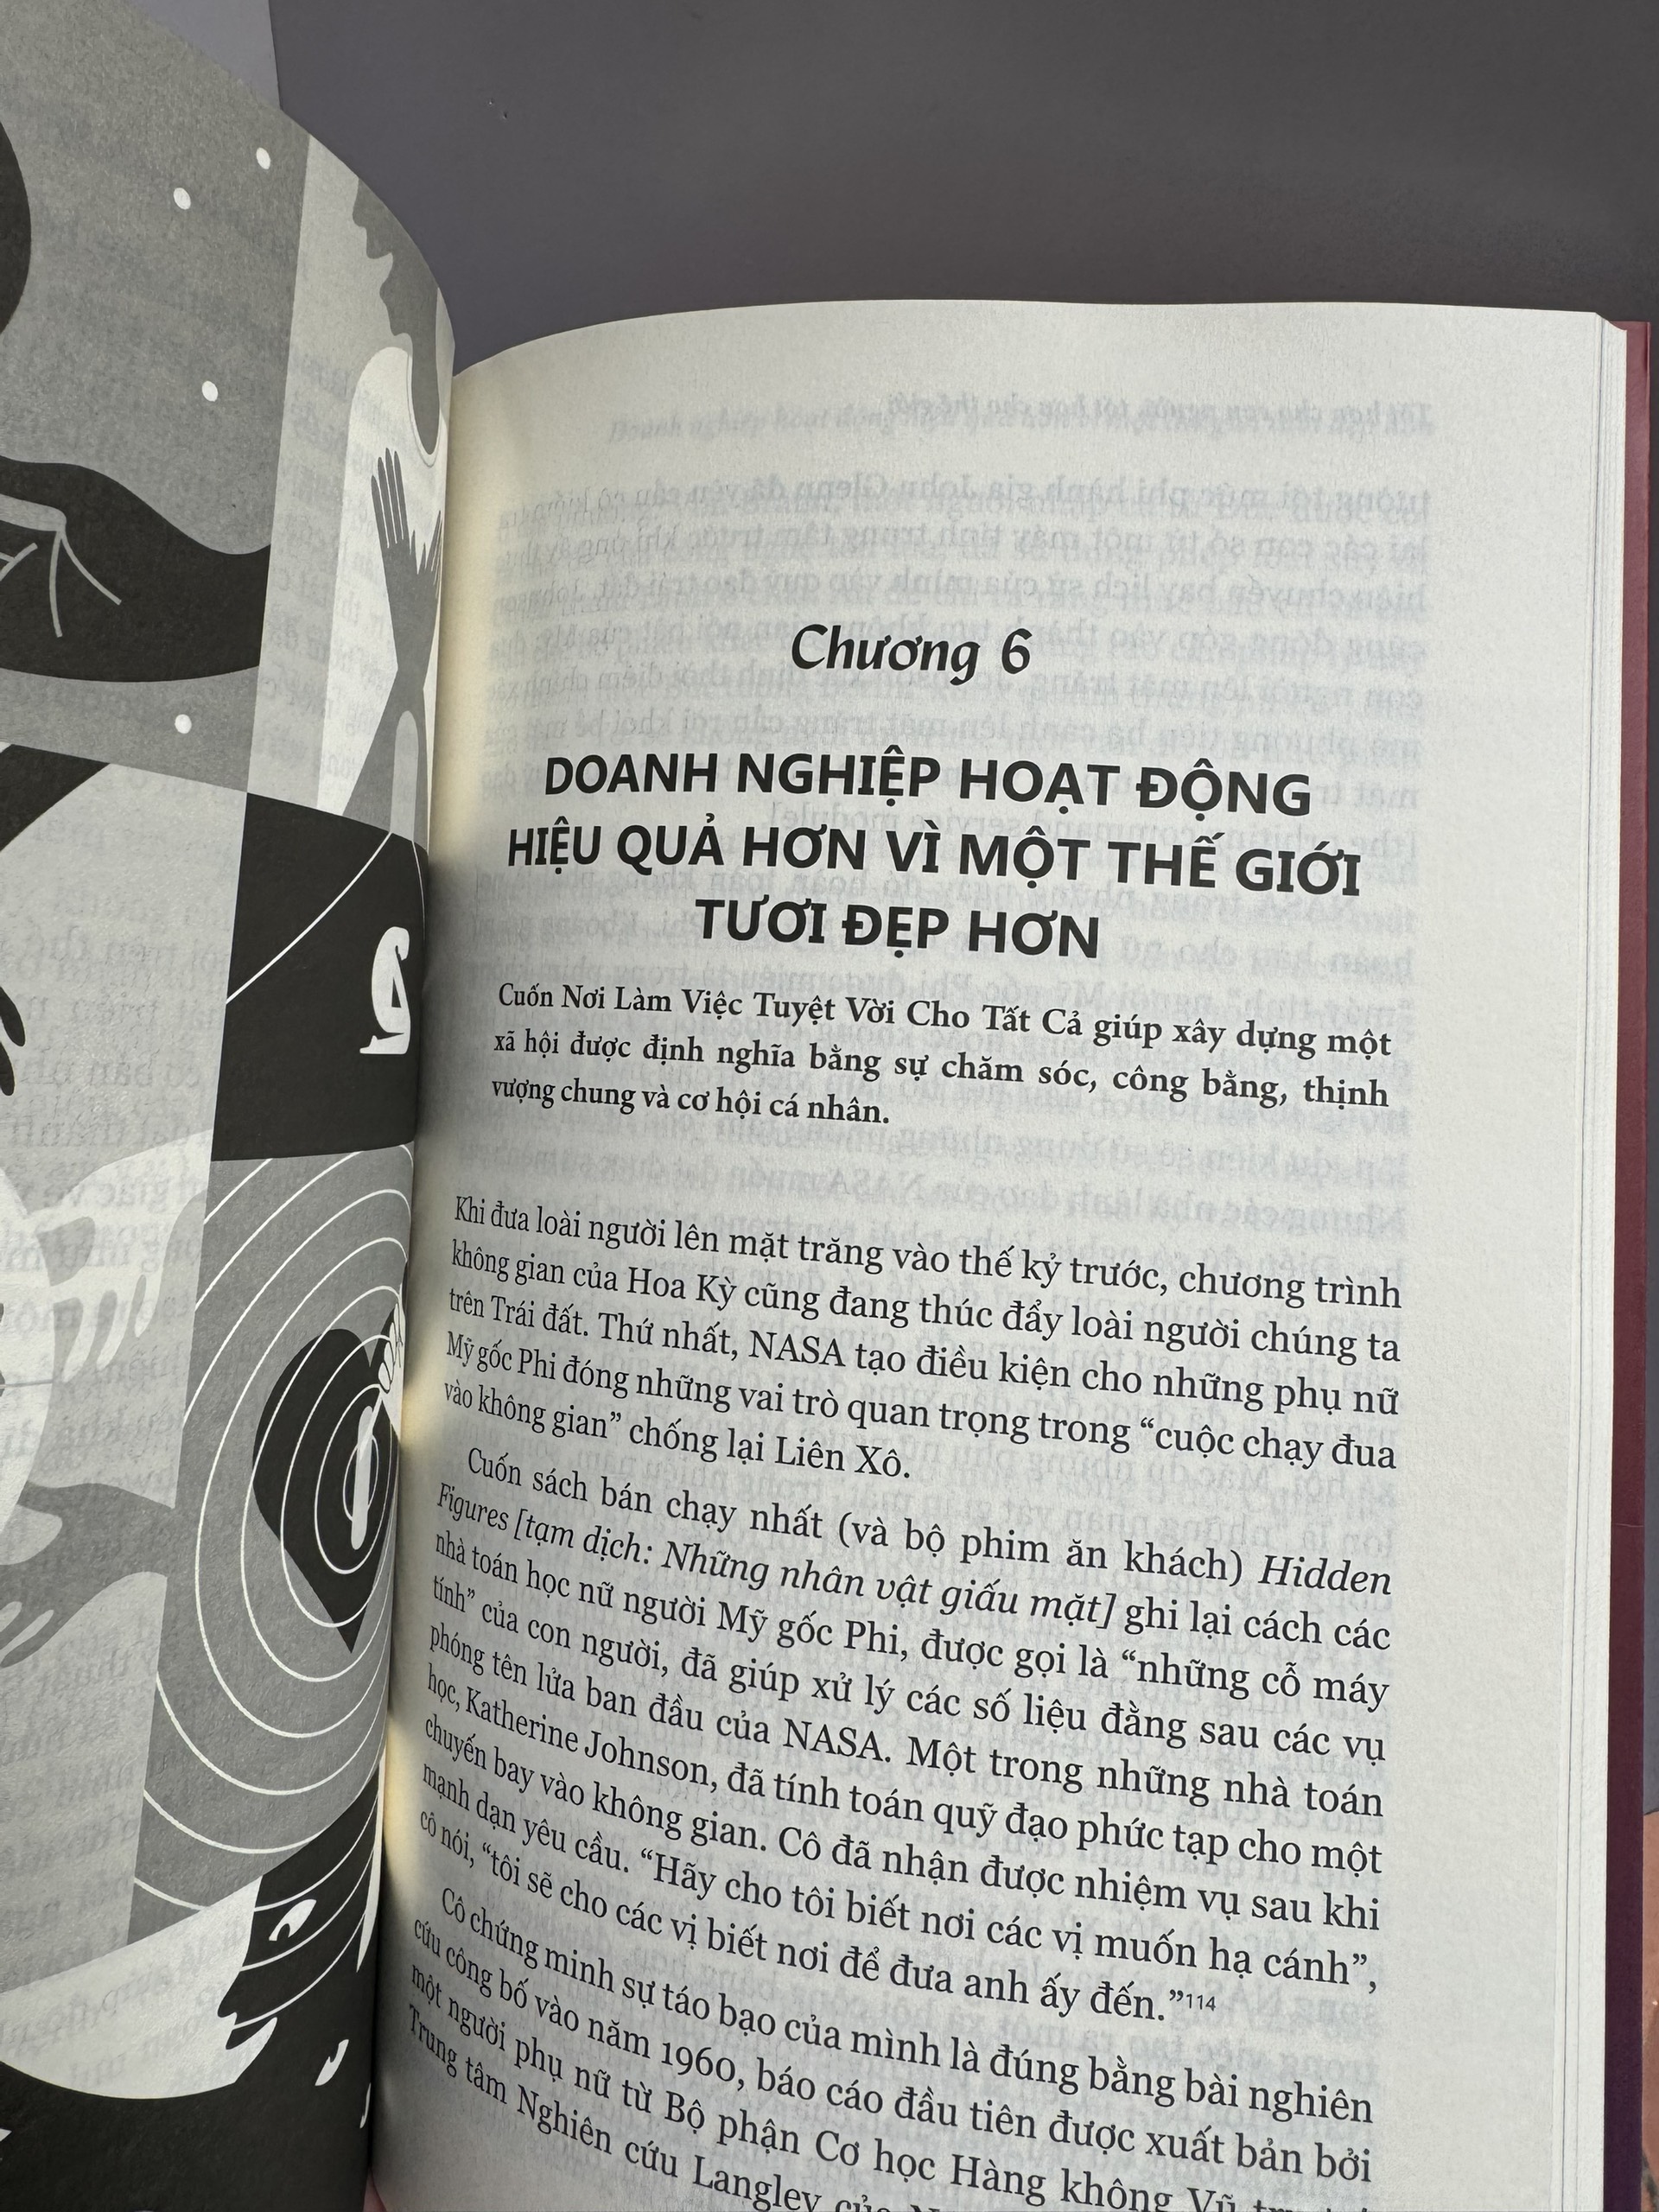 NƠI LÀM VIỆC TUYỆT VỜI CHO TẤT CẢ - Michael c. Bush - Nguyễn Việt Anh dịch - Pace Books - Nhà xuất bản Thanh Niên.